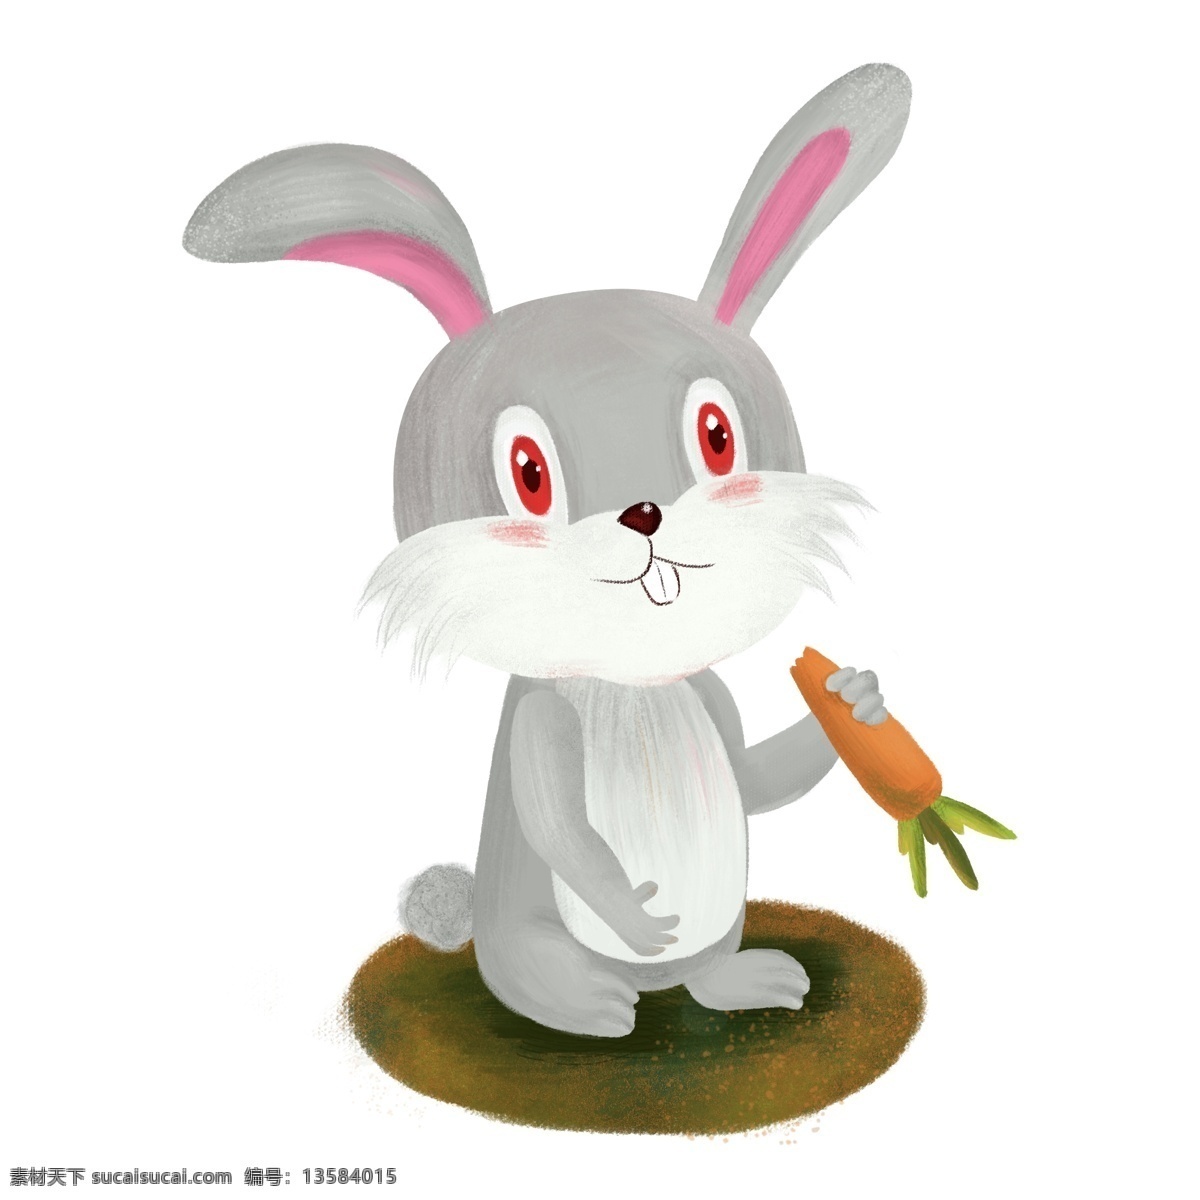 手绘兔 可爱兔子 兔子简笔画 卡通小白兔 可爱小白兔 矢量小白兔 口袋兔子 矢量兔子 兔子矢量 卡通矢量兔子 口袋卡通兔子 兔子表情包 兔子表情 兔子花 蝴蝶结兔子 卡通 矢量 兔子 小白兔 兔兔 可爱 卡通设计